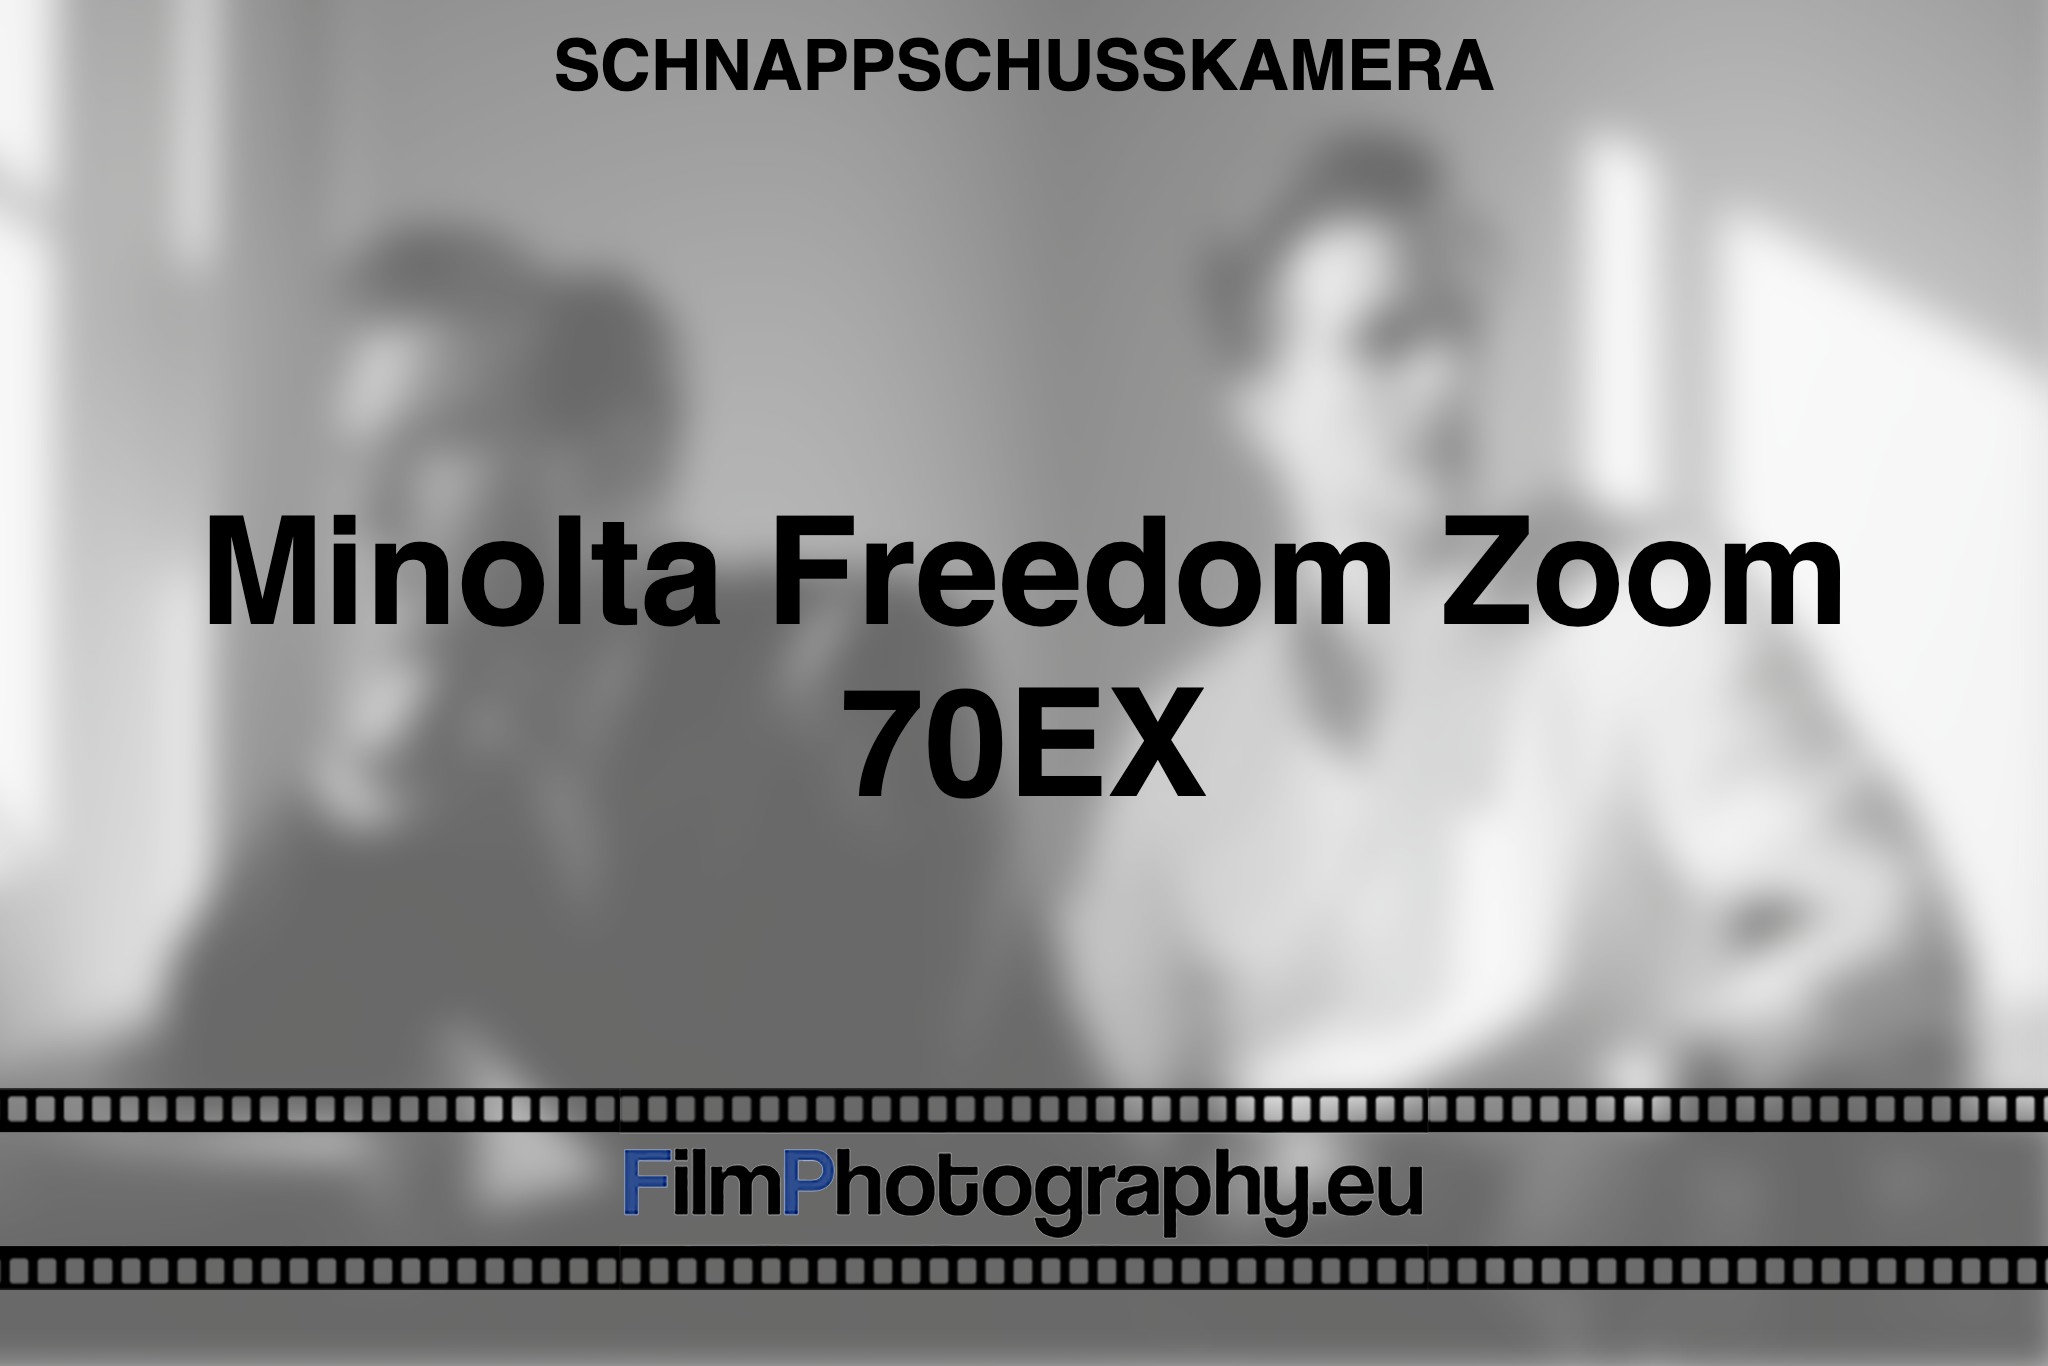 minolta-freedom-zoom-70ex-schnappschusskamera-bnv